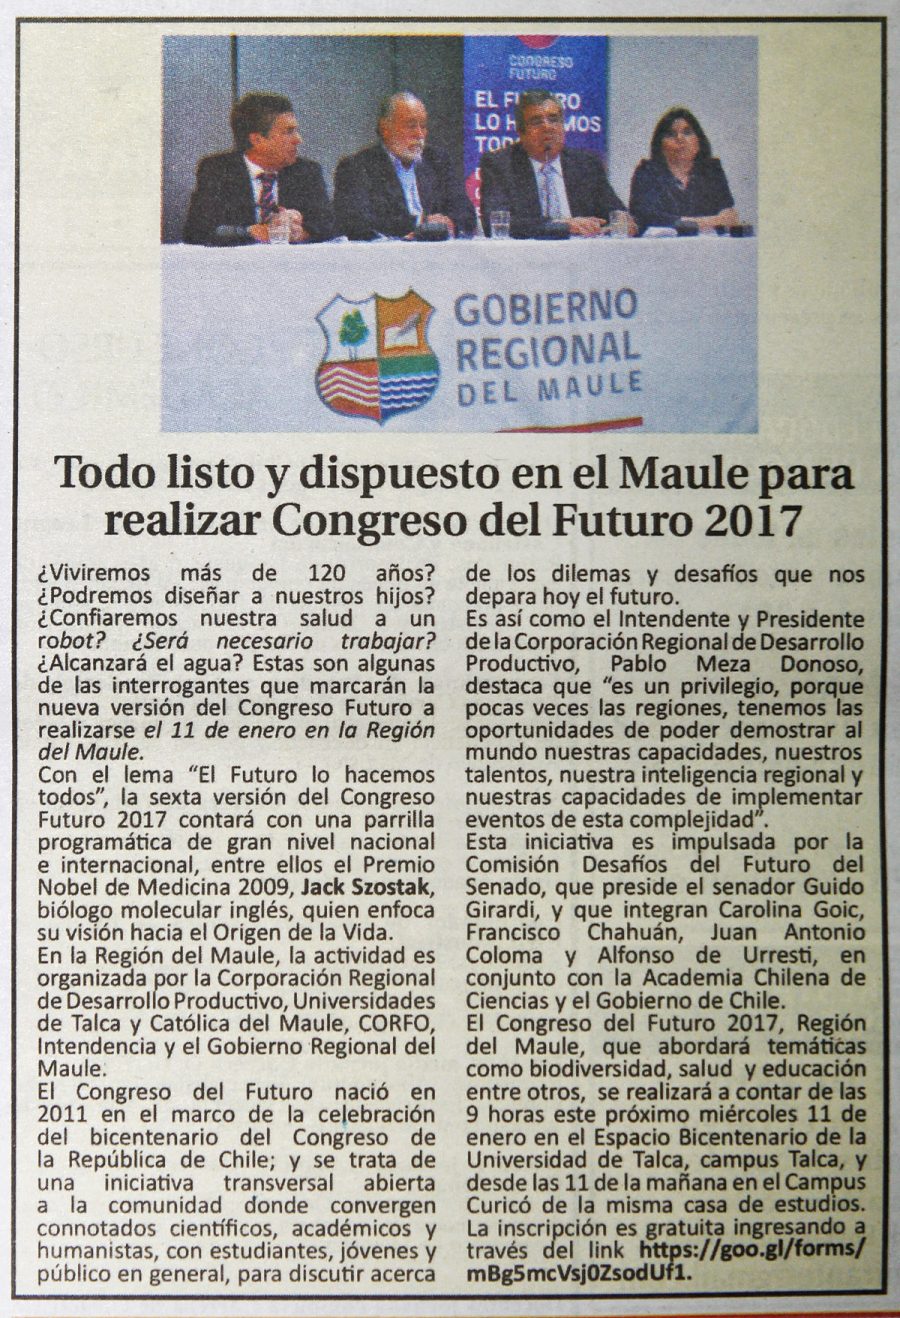 08 de enero 2017 en Diario El Centro: “Todo listo y dispuesto en el Maule para realizar Congreso del Futuro 2017”